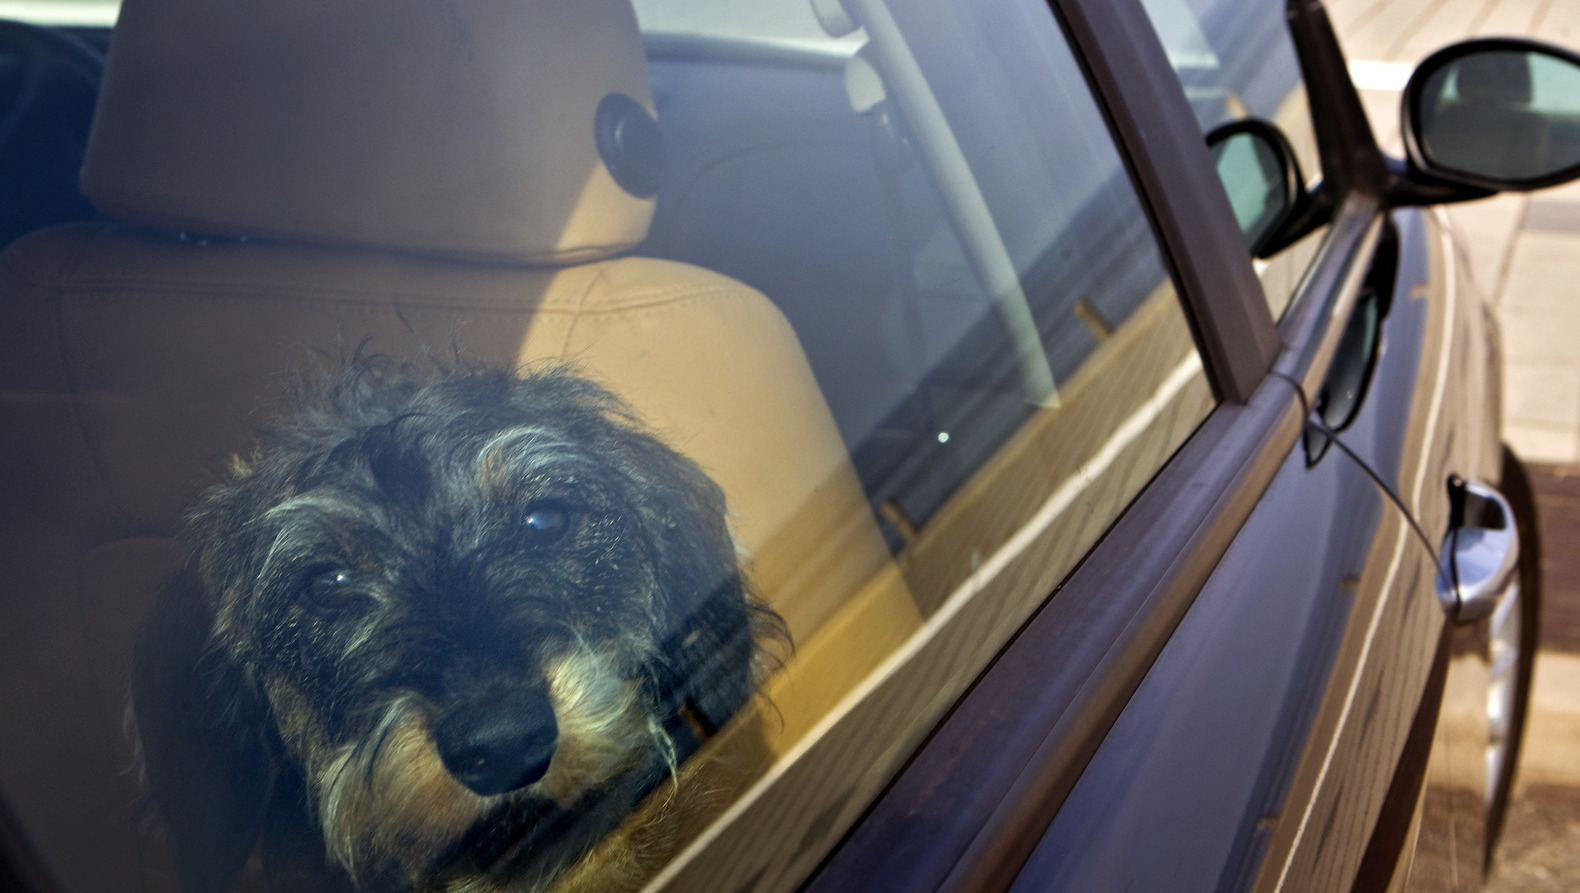 Politie waarschuwt: laat hond niet achter in hete auto